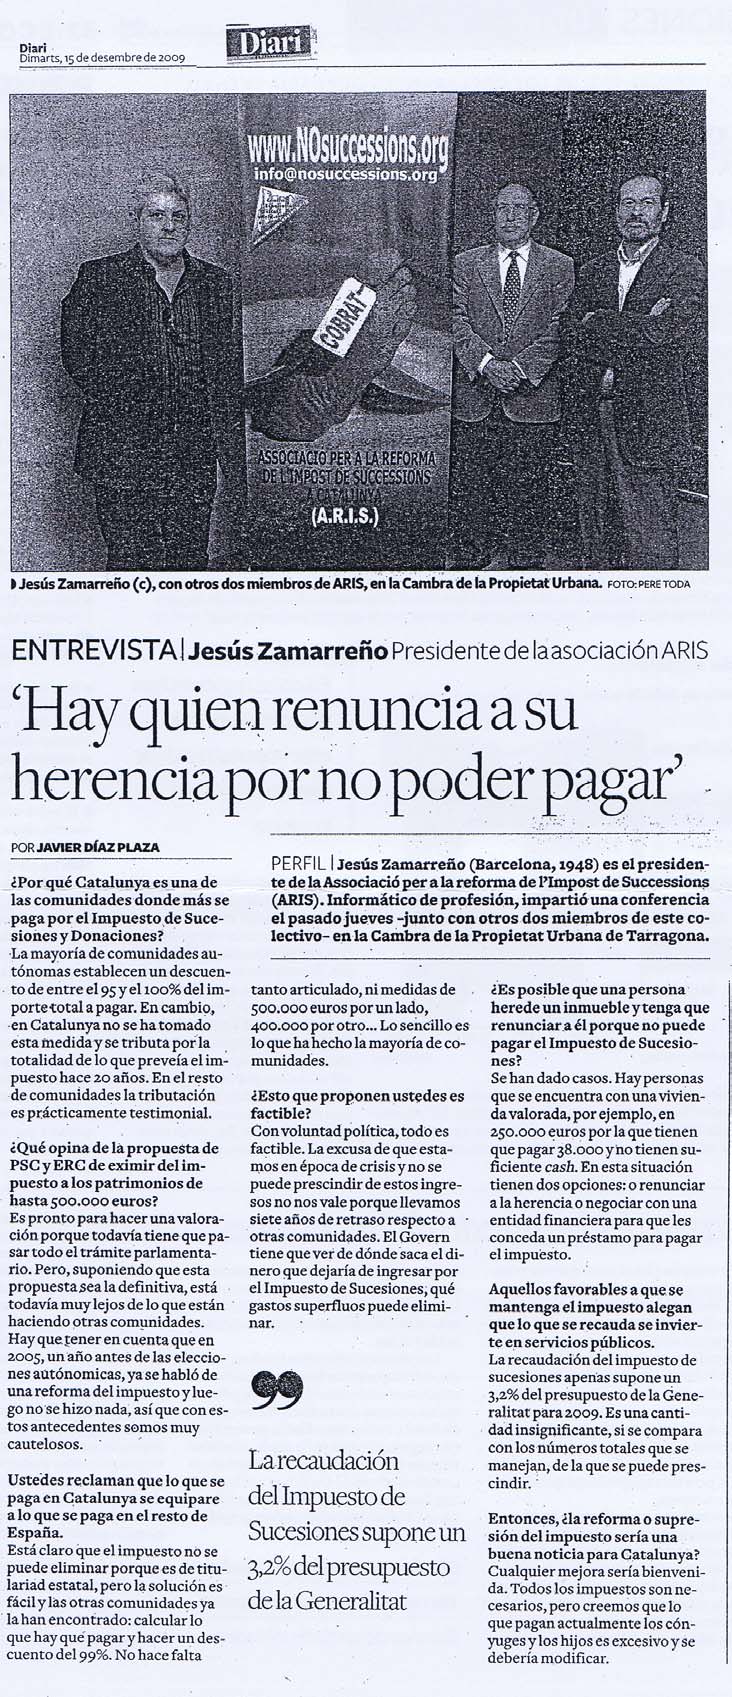 15/12/2009 -  DIARI DE TARRAGONA - Entrevista Jesús Zamarreño, Presidente de la Asociación ARIS: "Hay quien renuncia a su herencia por no poder pagar" DdT151209